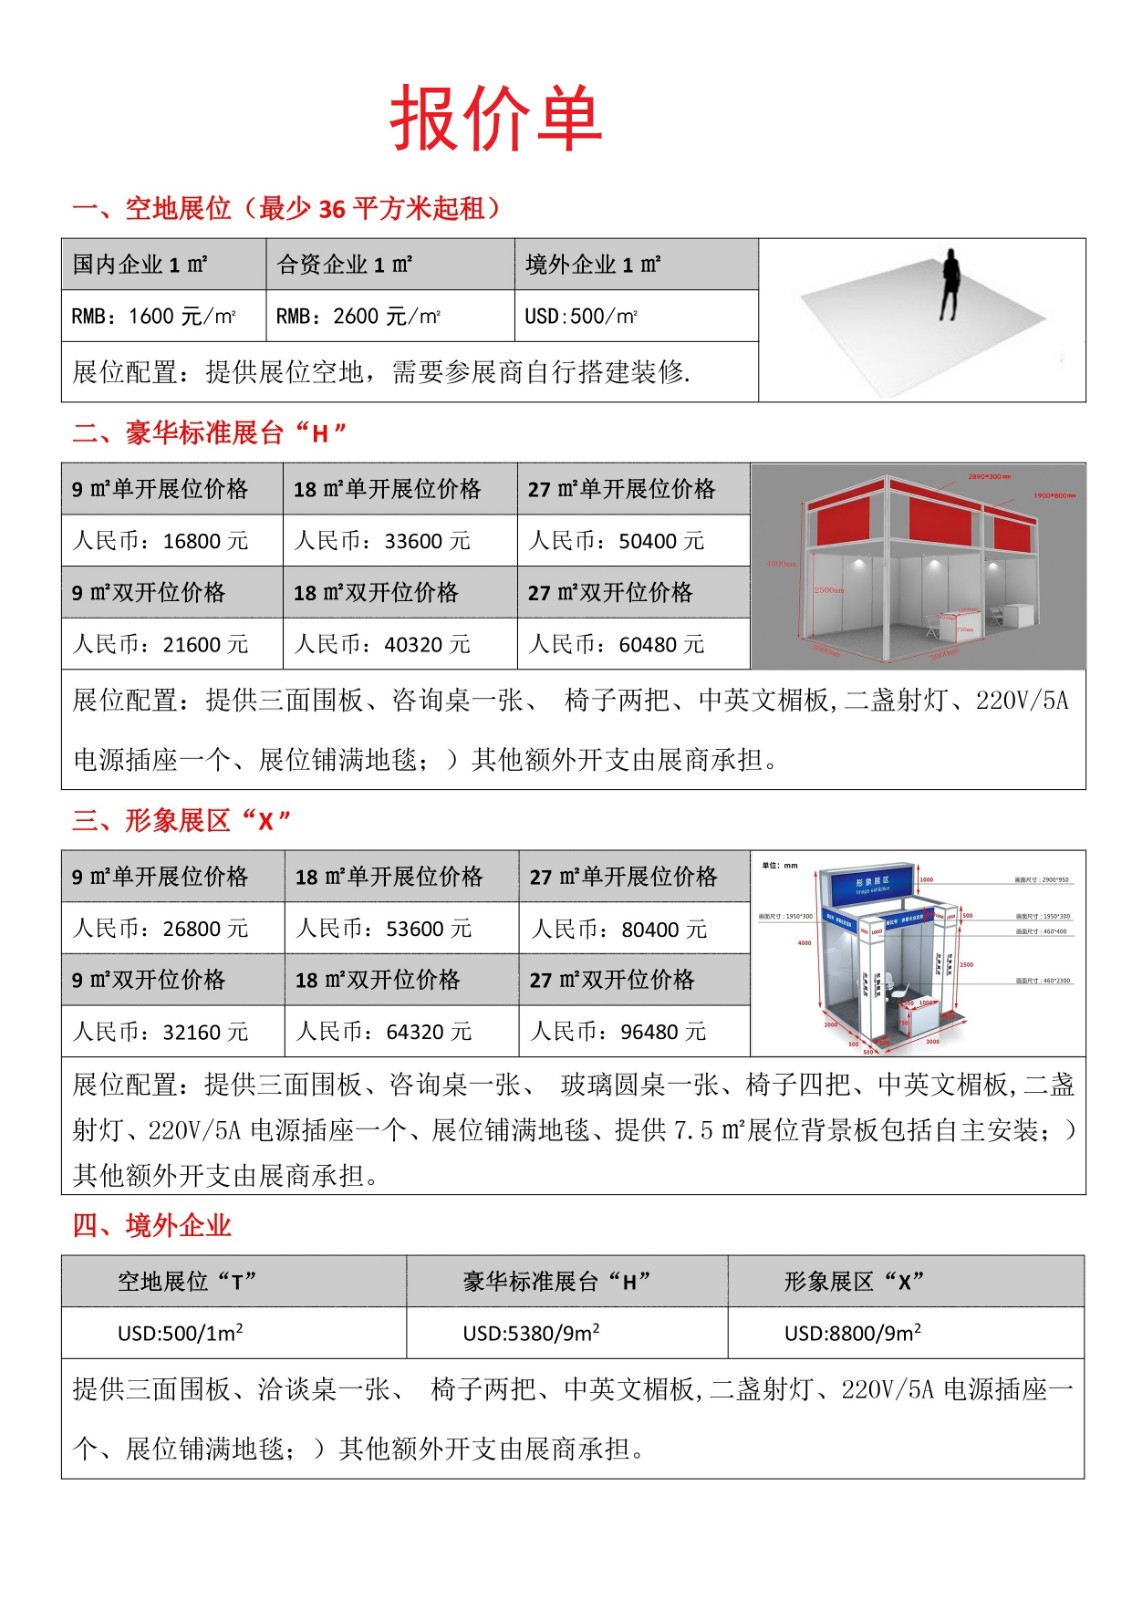 深圳医疗器械展览会-价格表